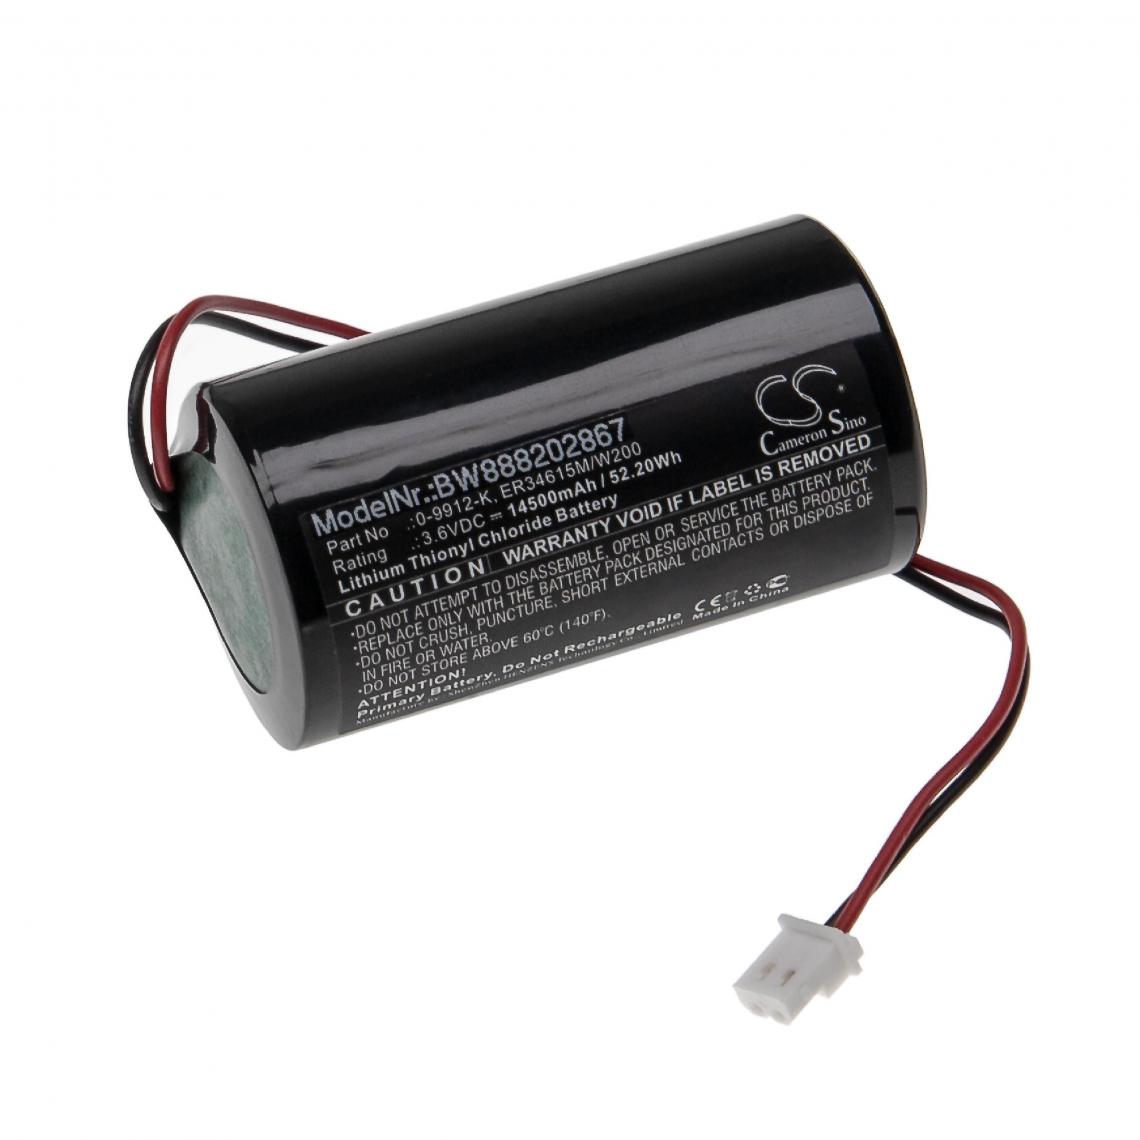 Vhbw - vhbw Batterie compatible avec Visonic MC-S710, MC-S720, MC-S730 système d'alarme (14500mAh, 3,6V, Li-SOCl2) - Autre appareil de mesure